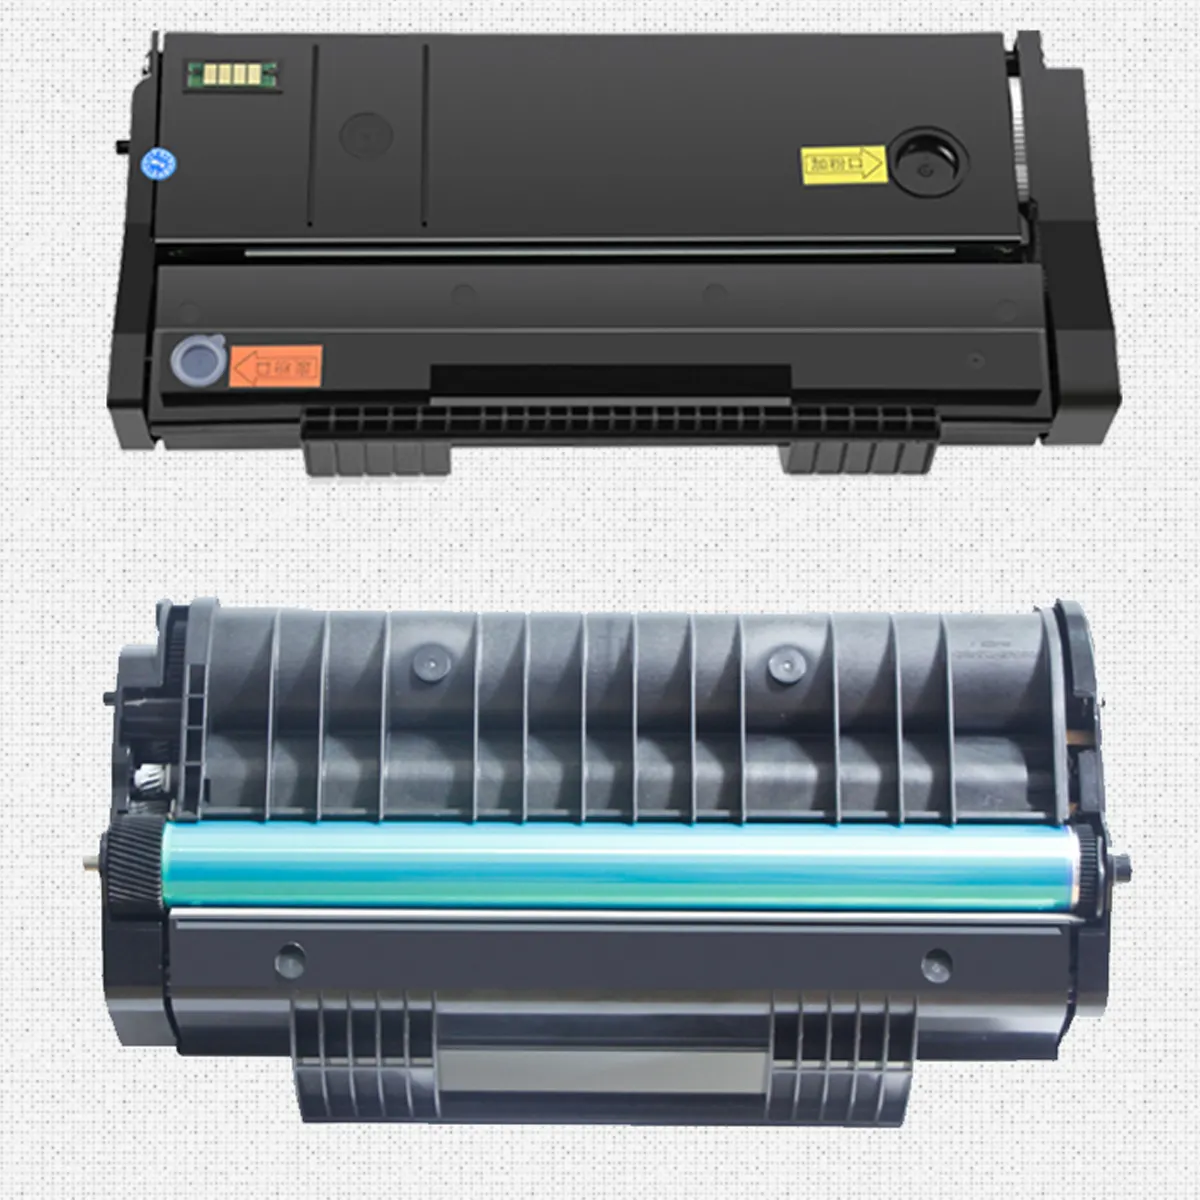 สำหรับ Ricohs Aficio SP150X SP150SU SP150SF SP150SUW SP150W SP150S เครื่องพิมพ์เลเซอร์ตลับหมึกสีดำพร้อมชิป